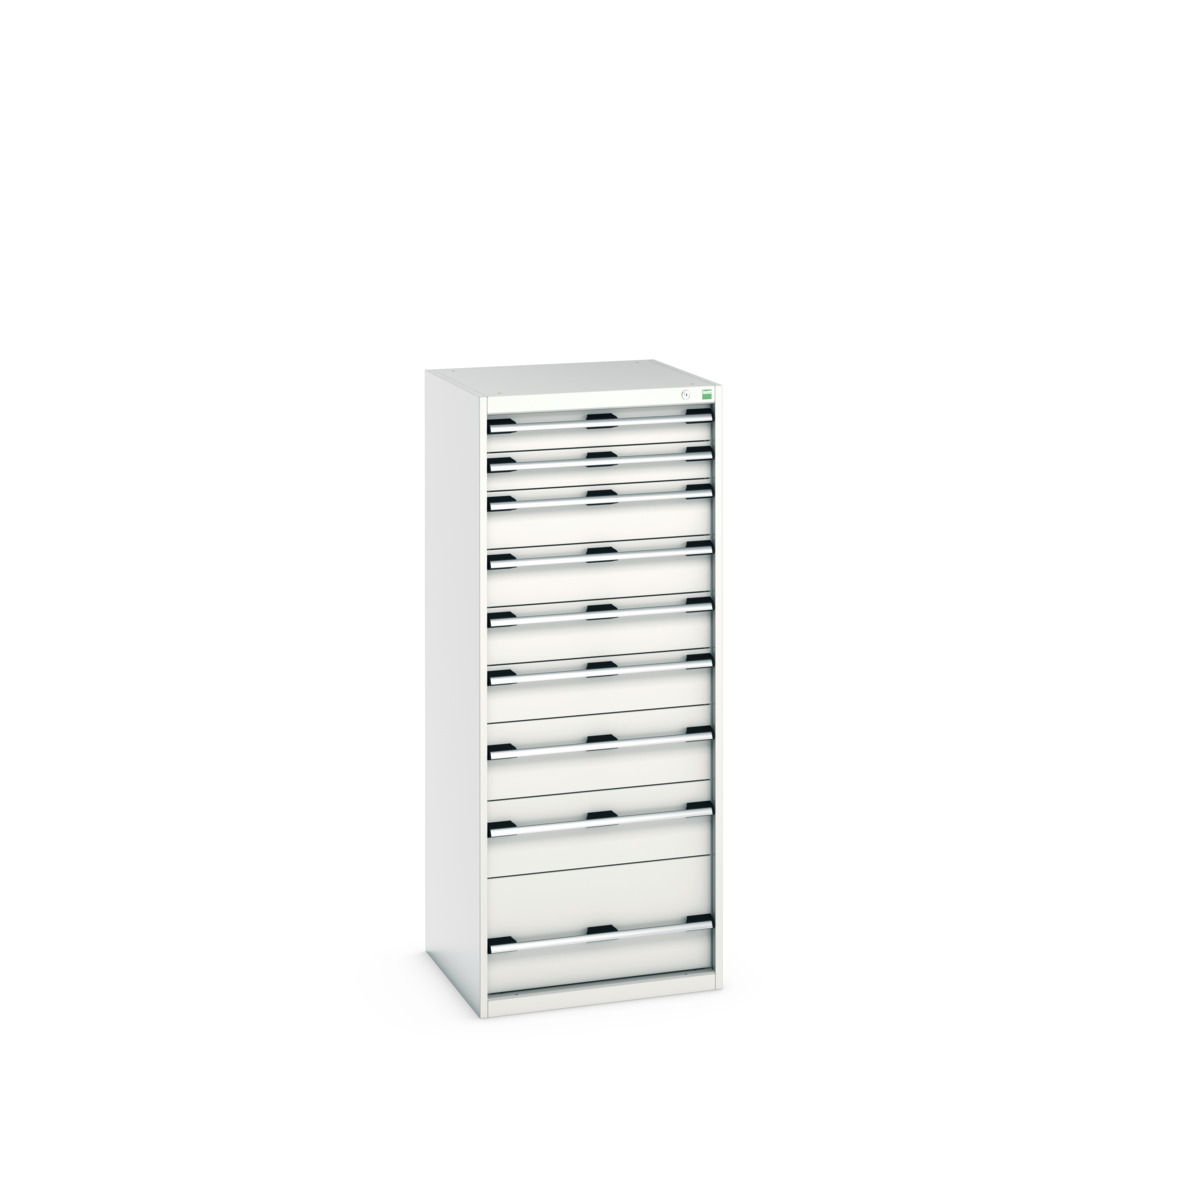 40019154.16V - cubio drawer cabinet